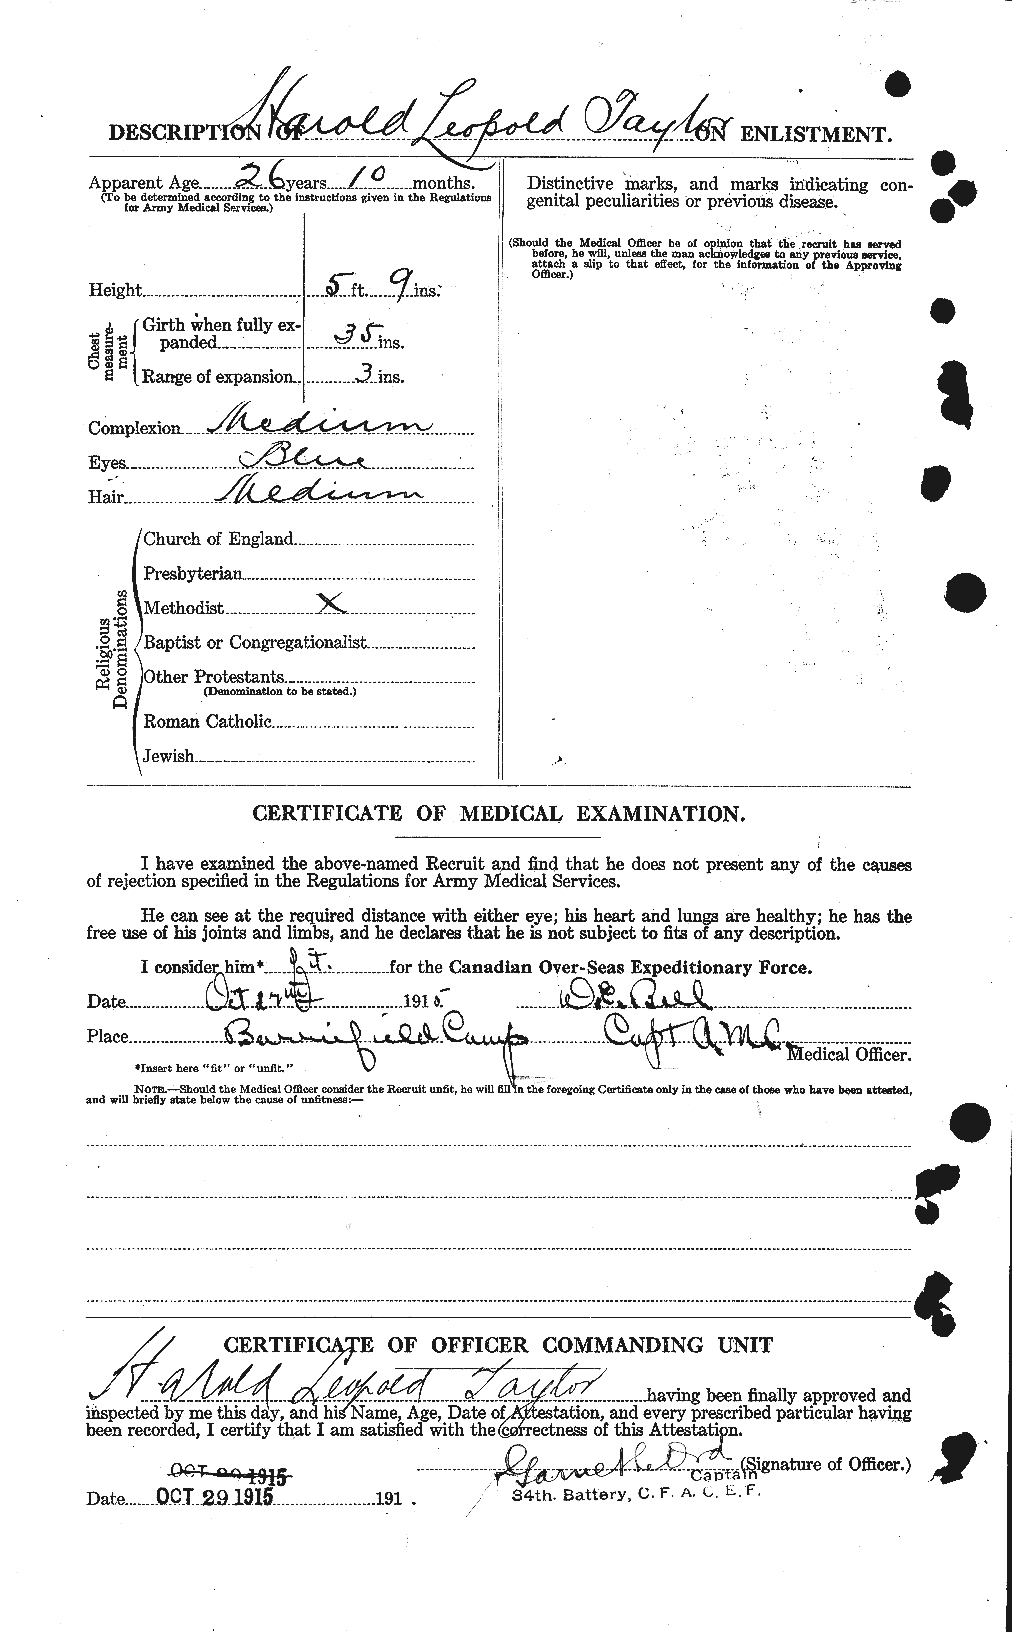 Dossiers du Personnel de la Première Guerre mondiale - CEC 626427b